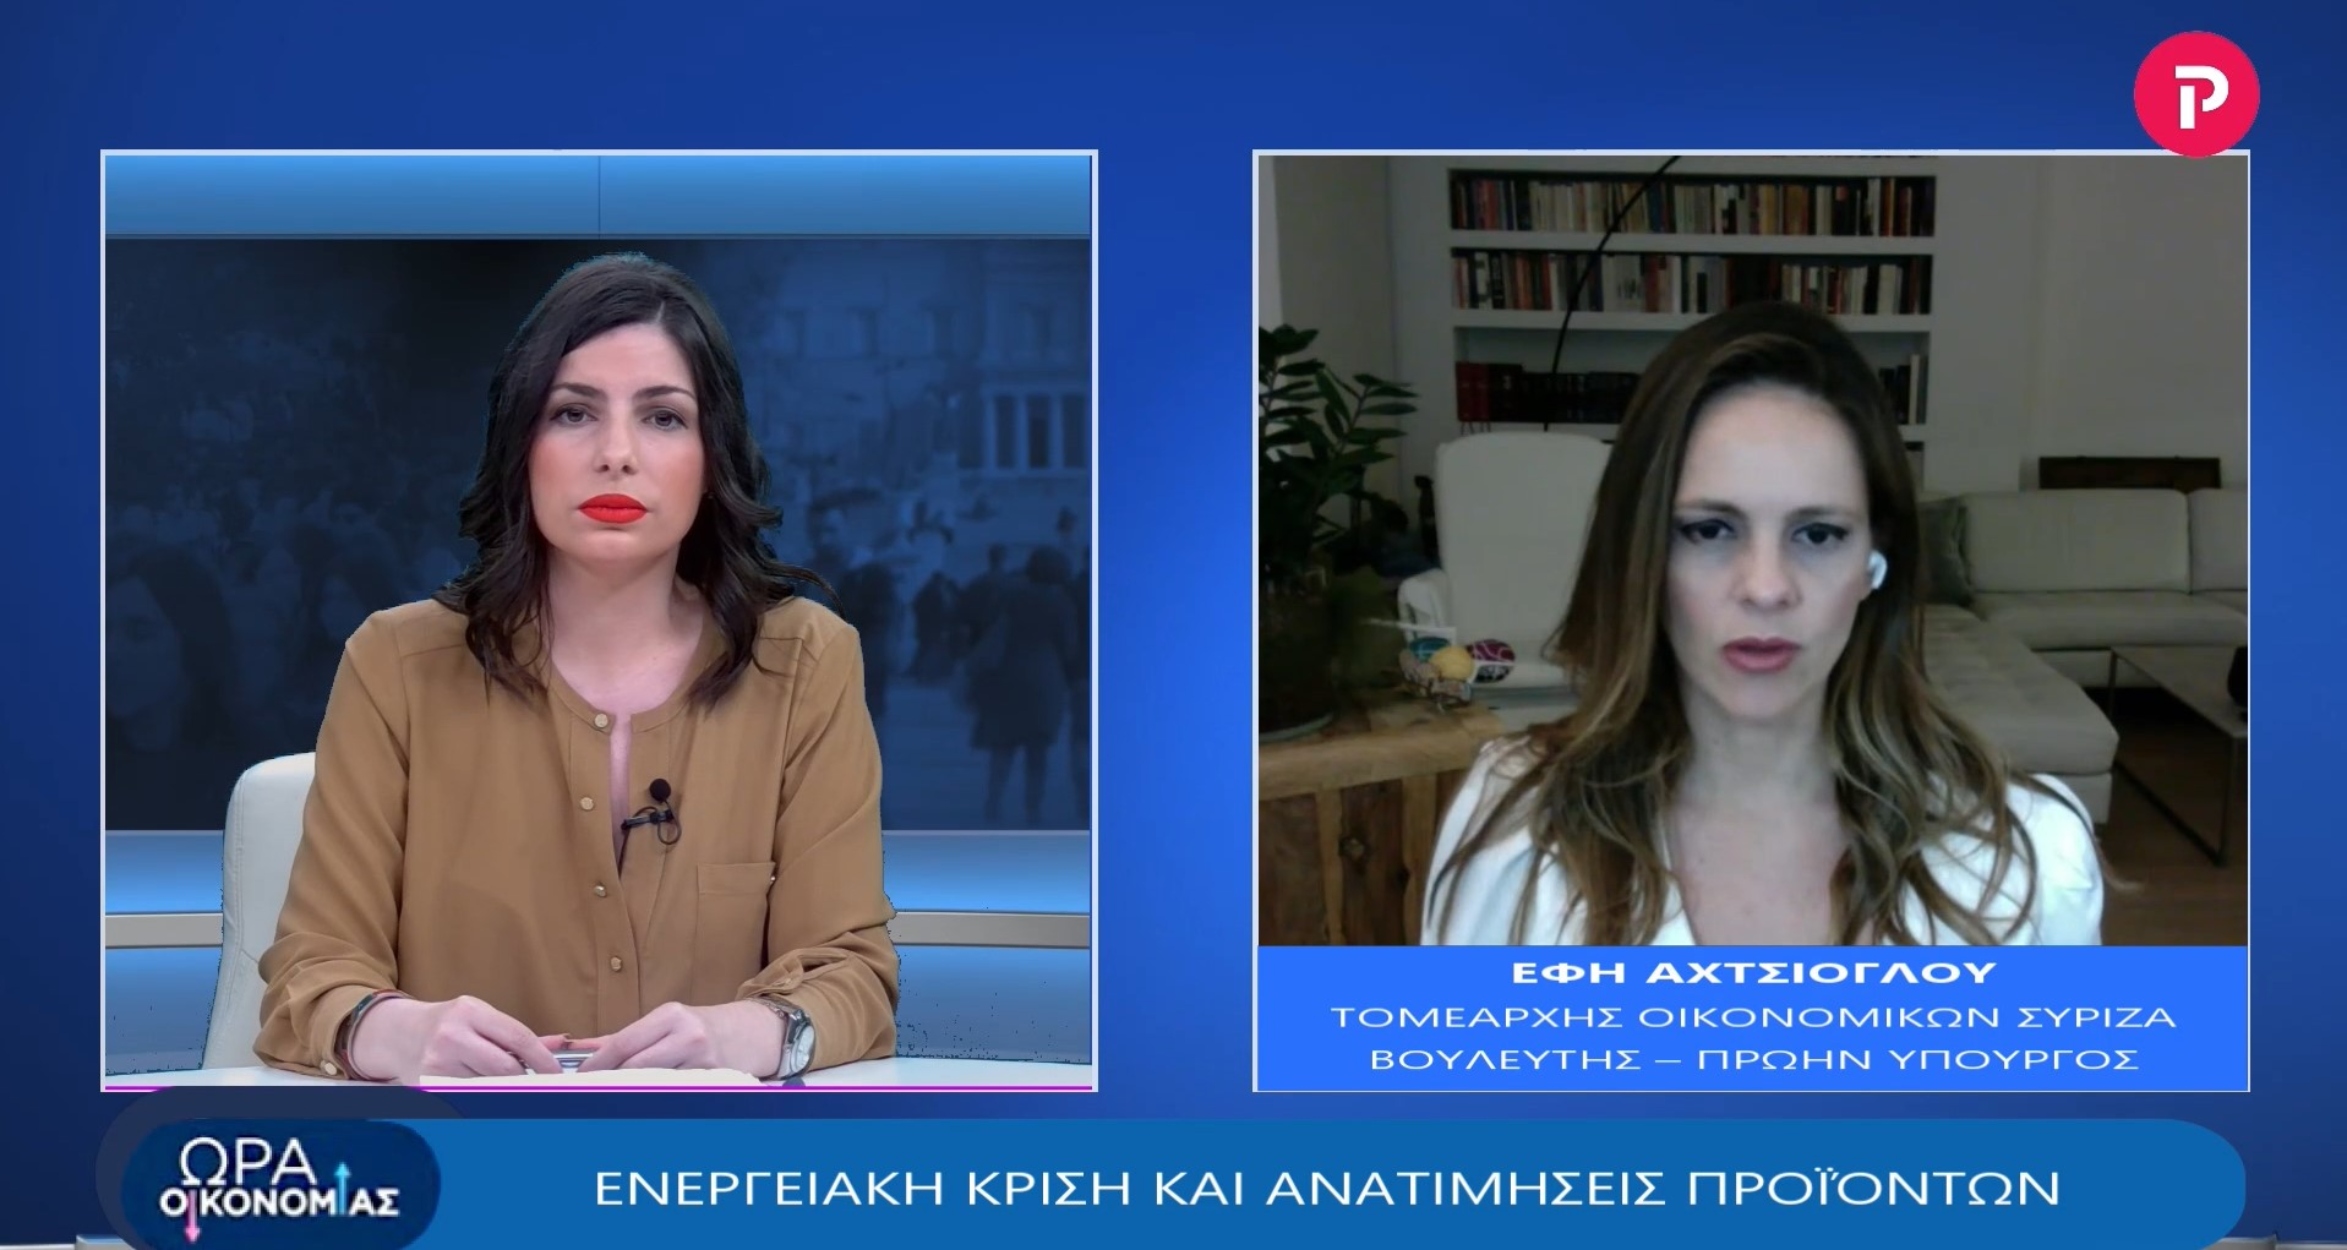 Έφη Αχτσιόγλου στο pagenews.gr: Ενεργειακή κρίση και ανατιμήσεις προϊόντων